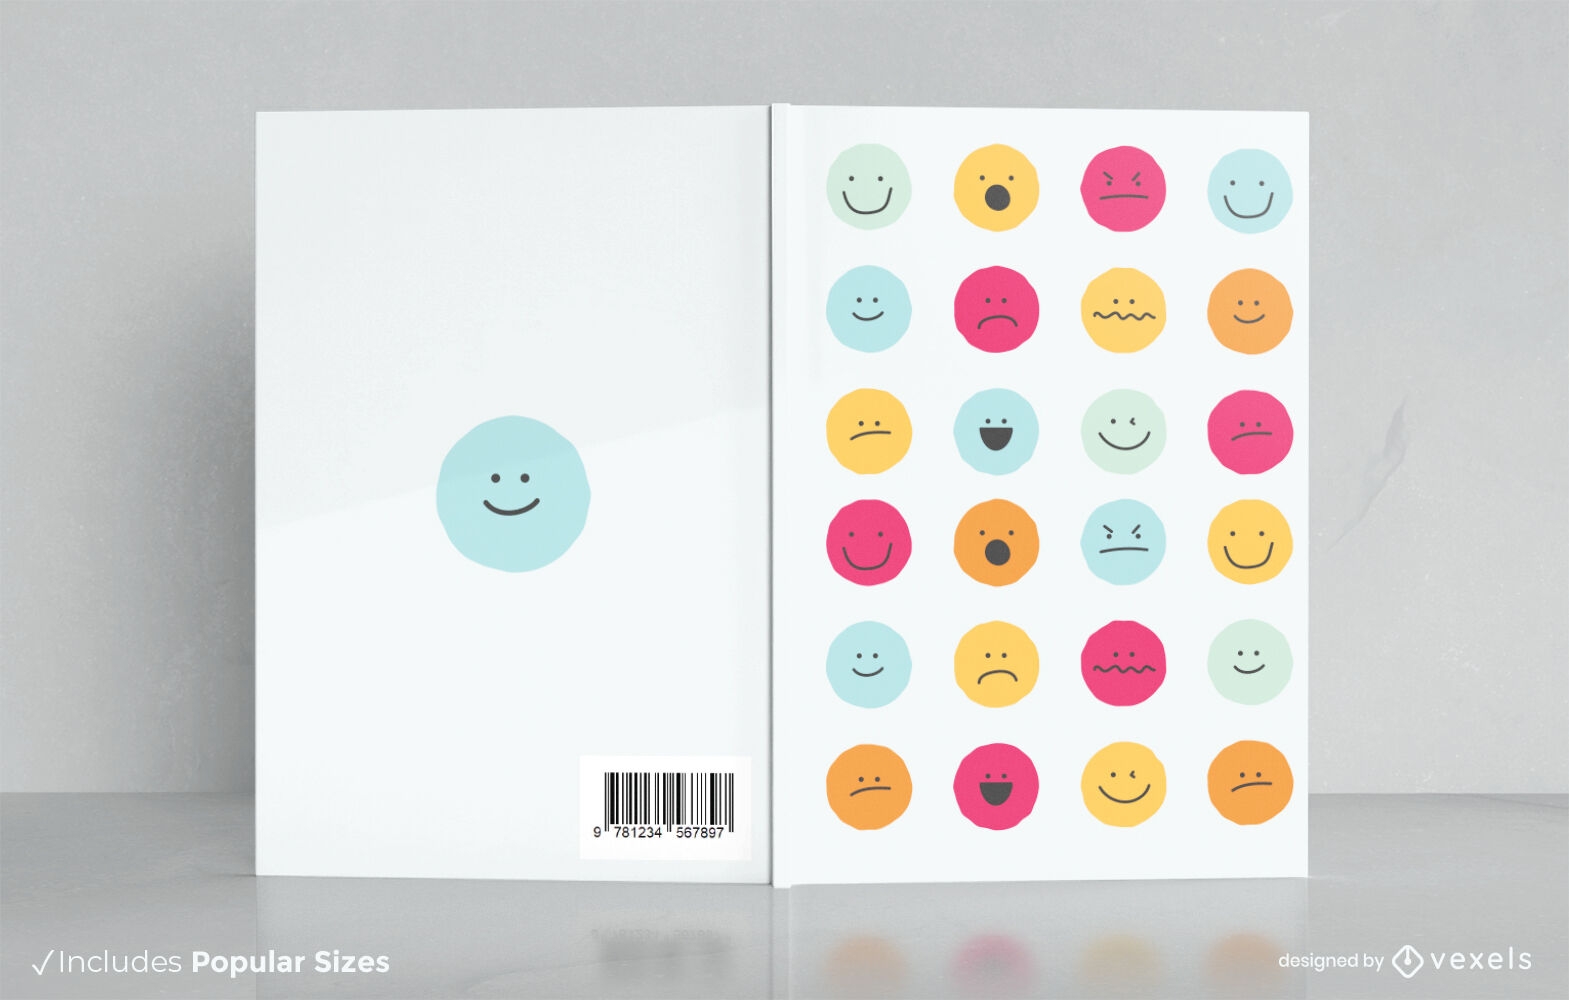 Emotion chart book cover design KDP